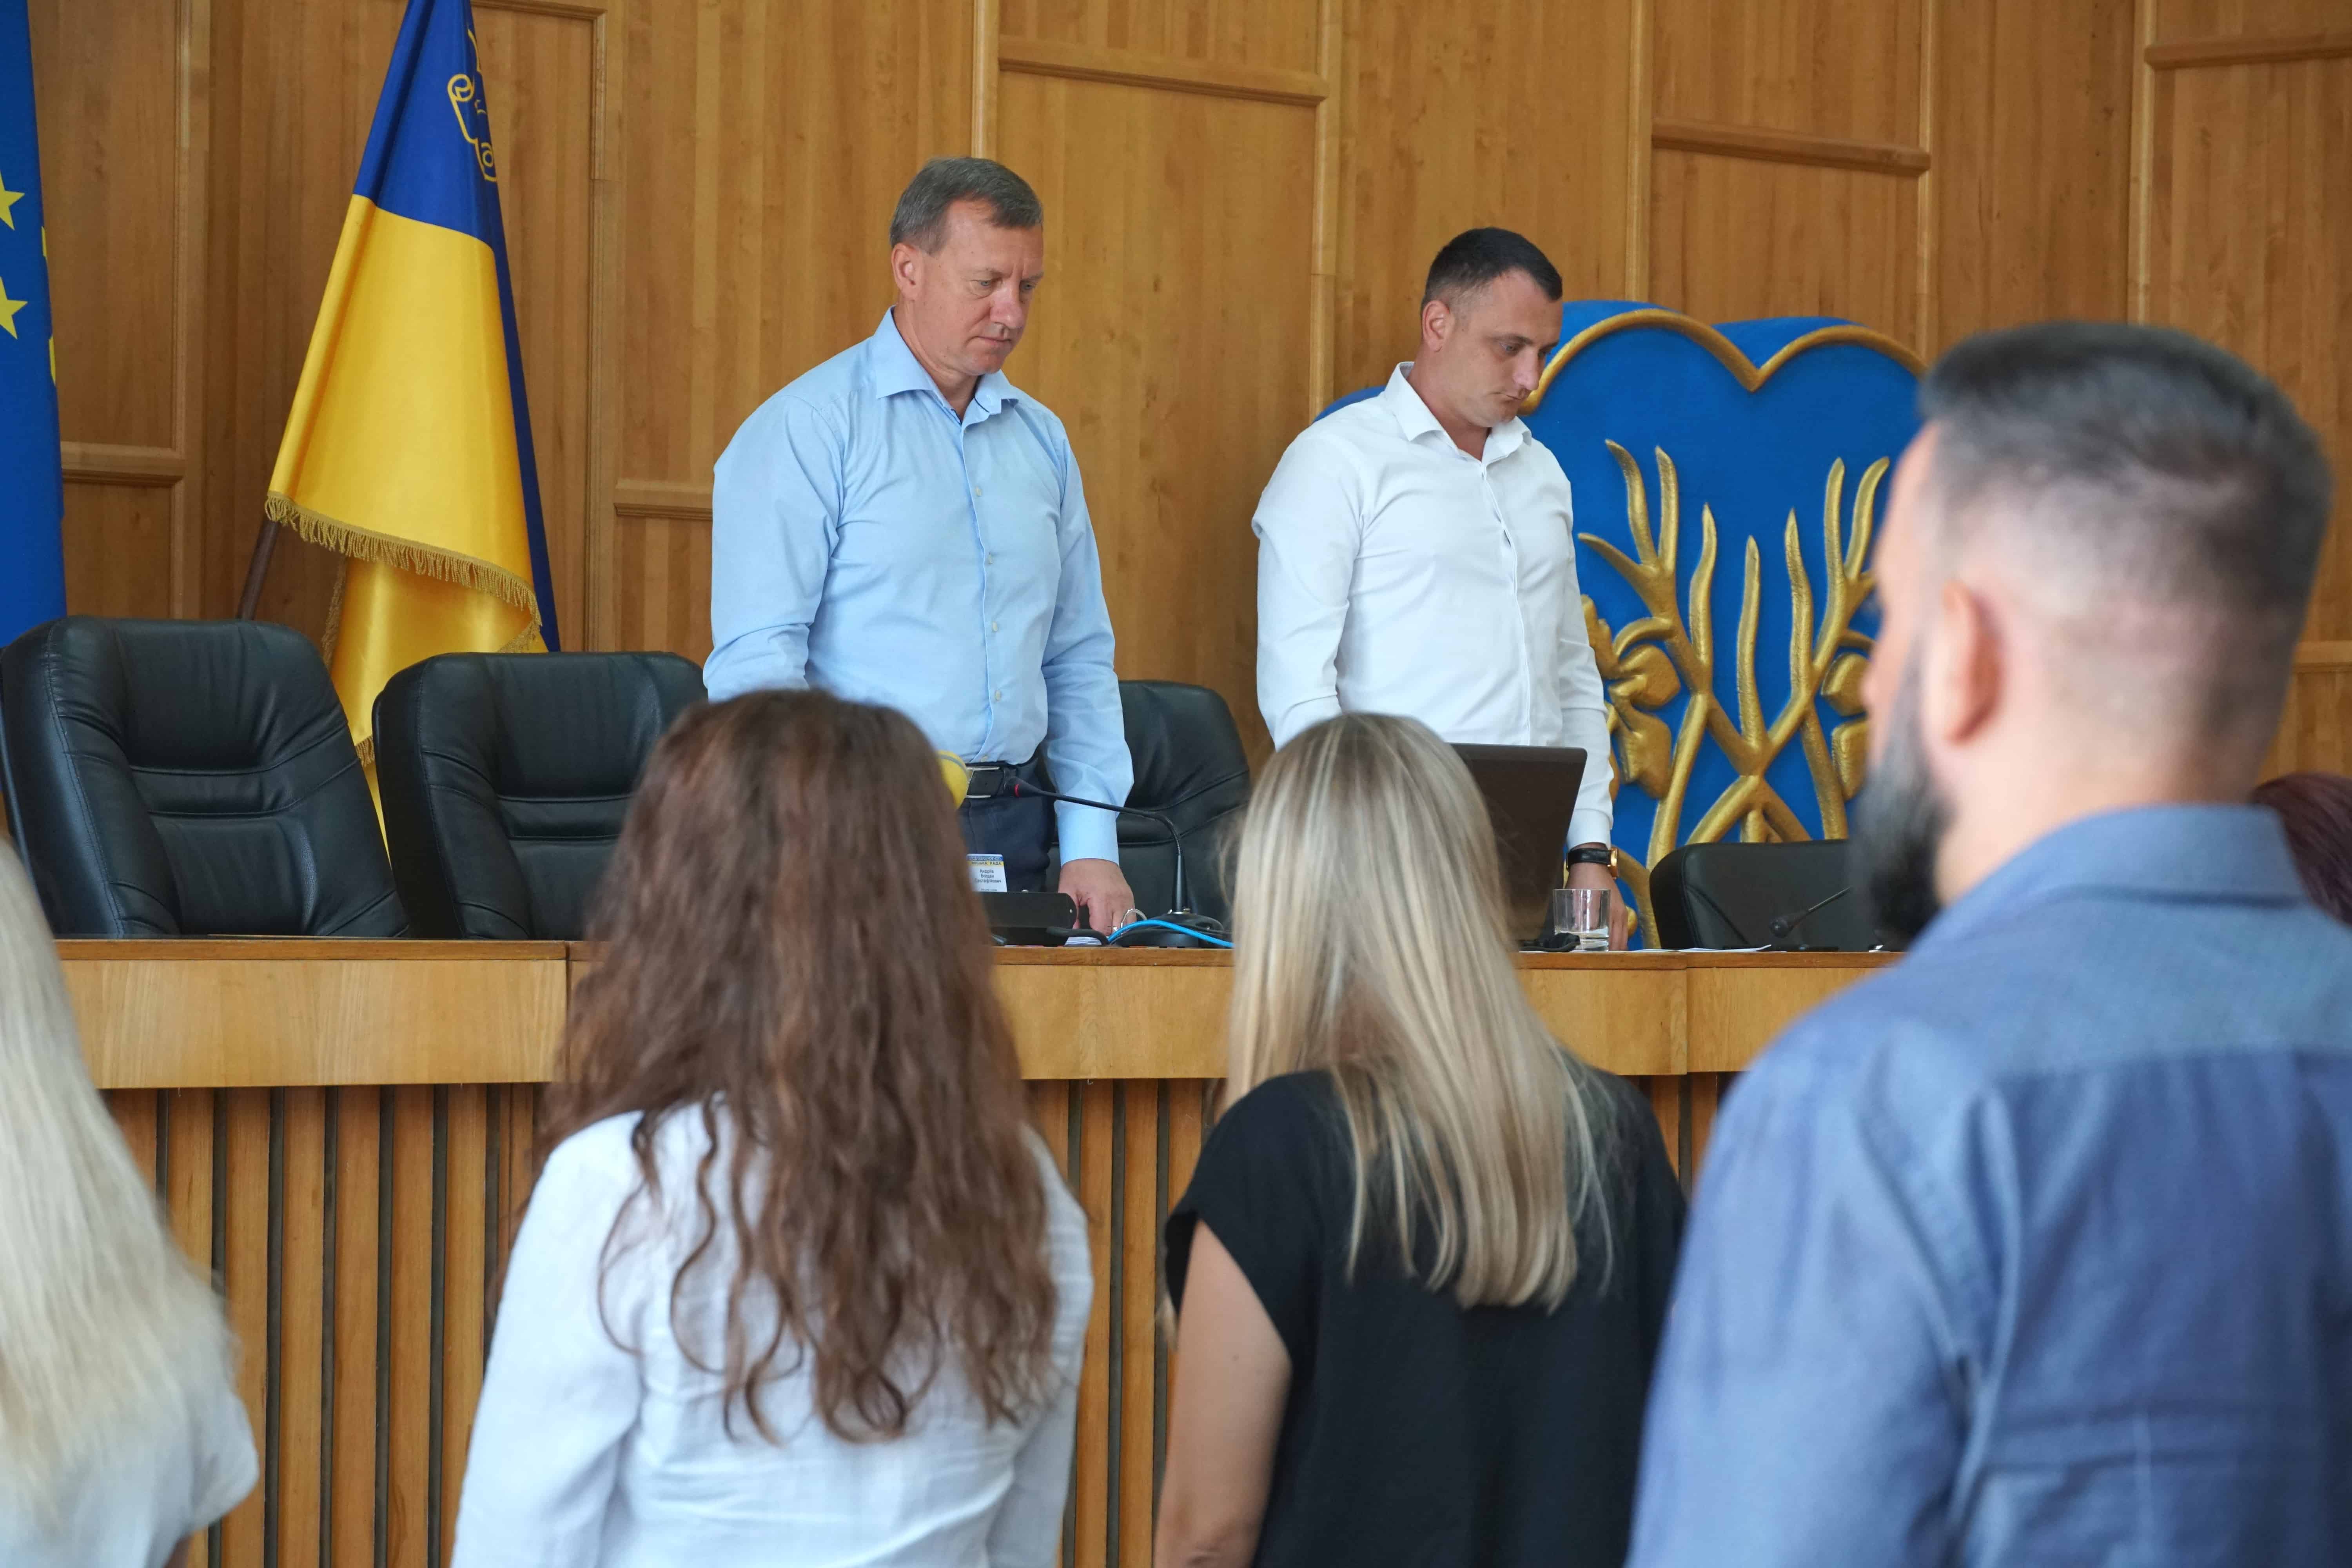 Звання «Почесний громадянин м. Ужгорода» (посмертно) сьогодні на позачерговій сесії міської ради присвоїли 47 військовослужбовцям